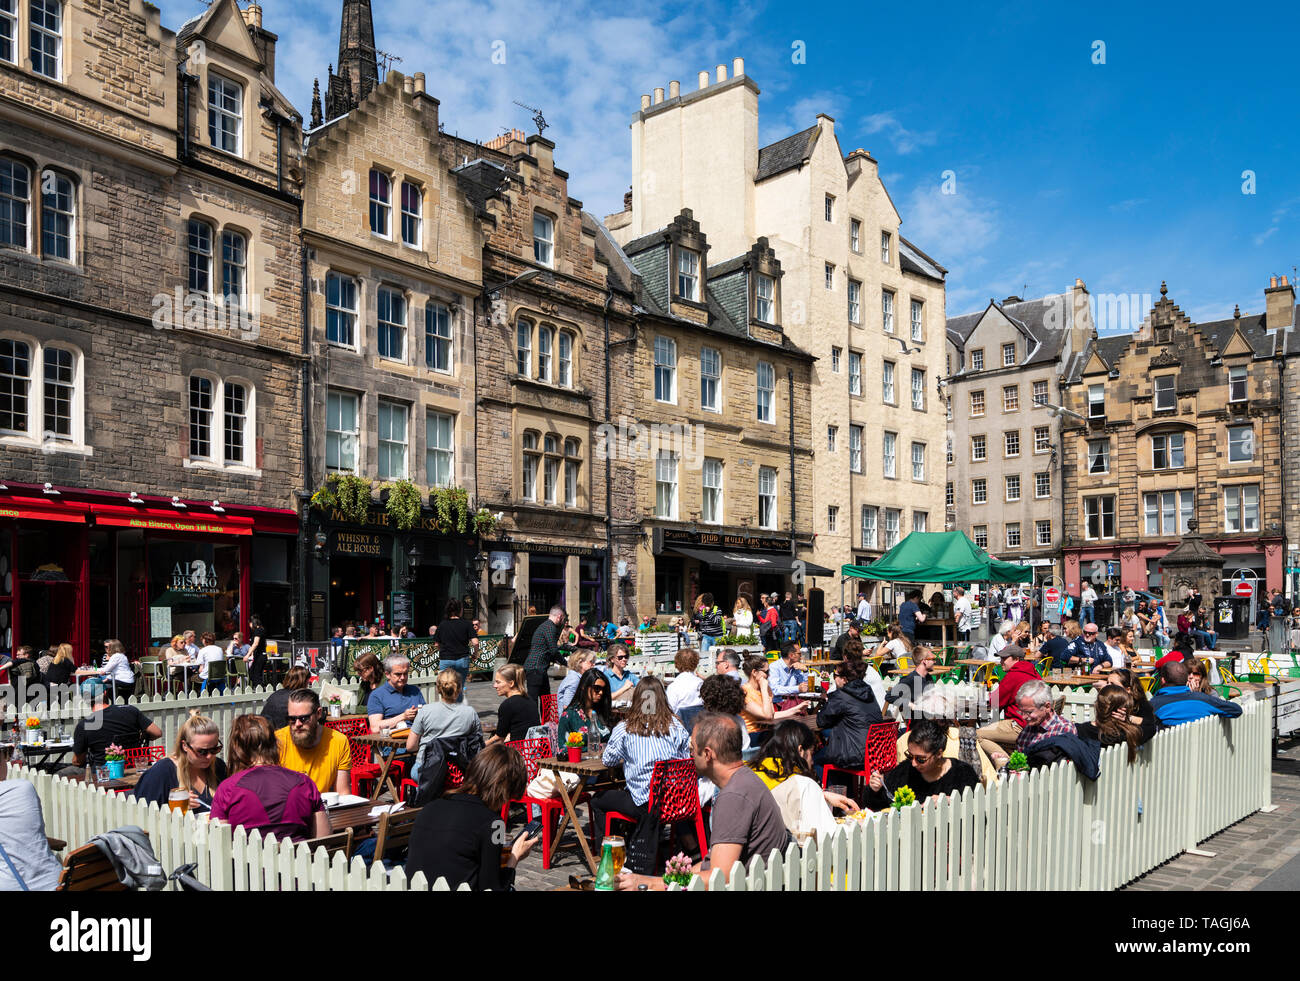 Viele Menschen trinken in Bars im Freien bei schönem Wetter am Grassmarket in der Altstadt von Edinburgh, Schottland, Großbritannien Stockfoto